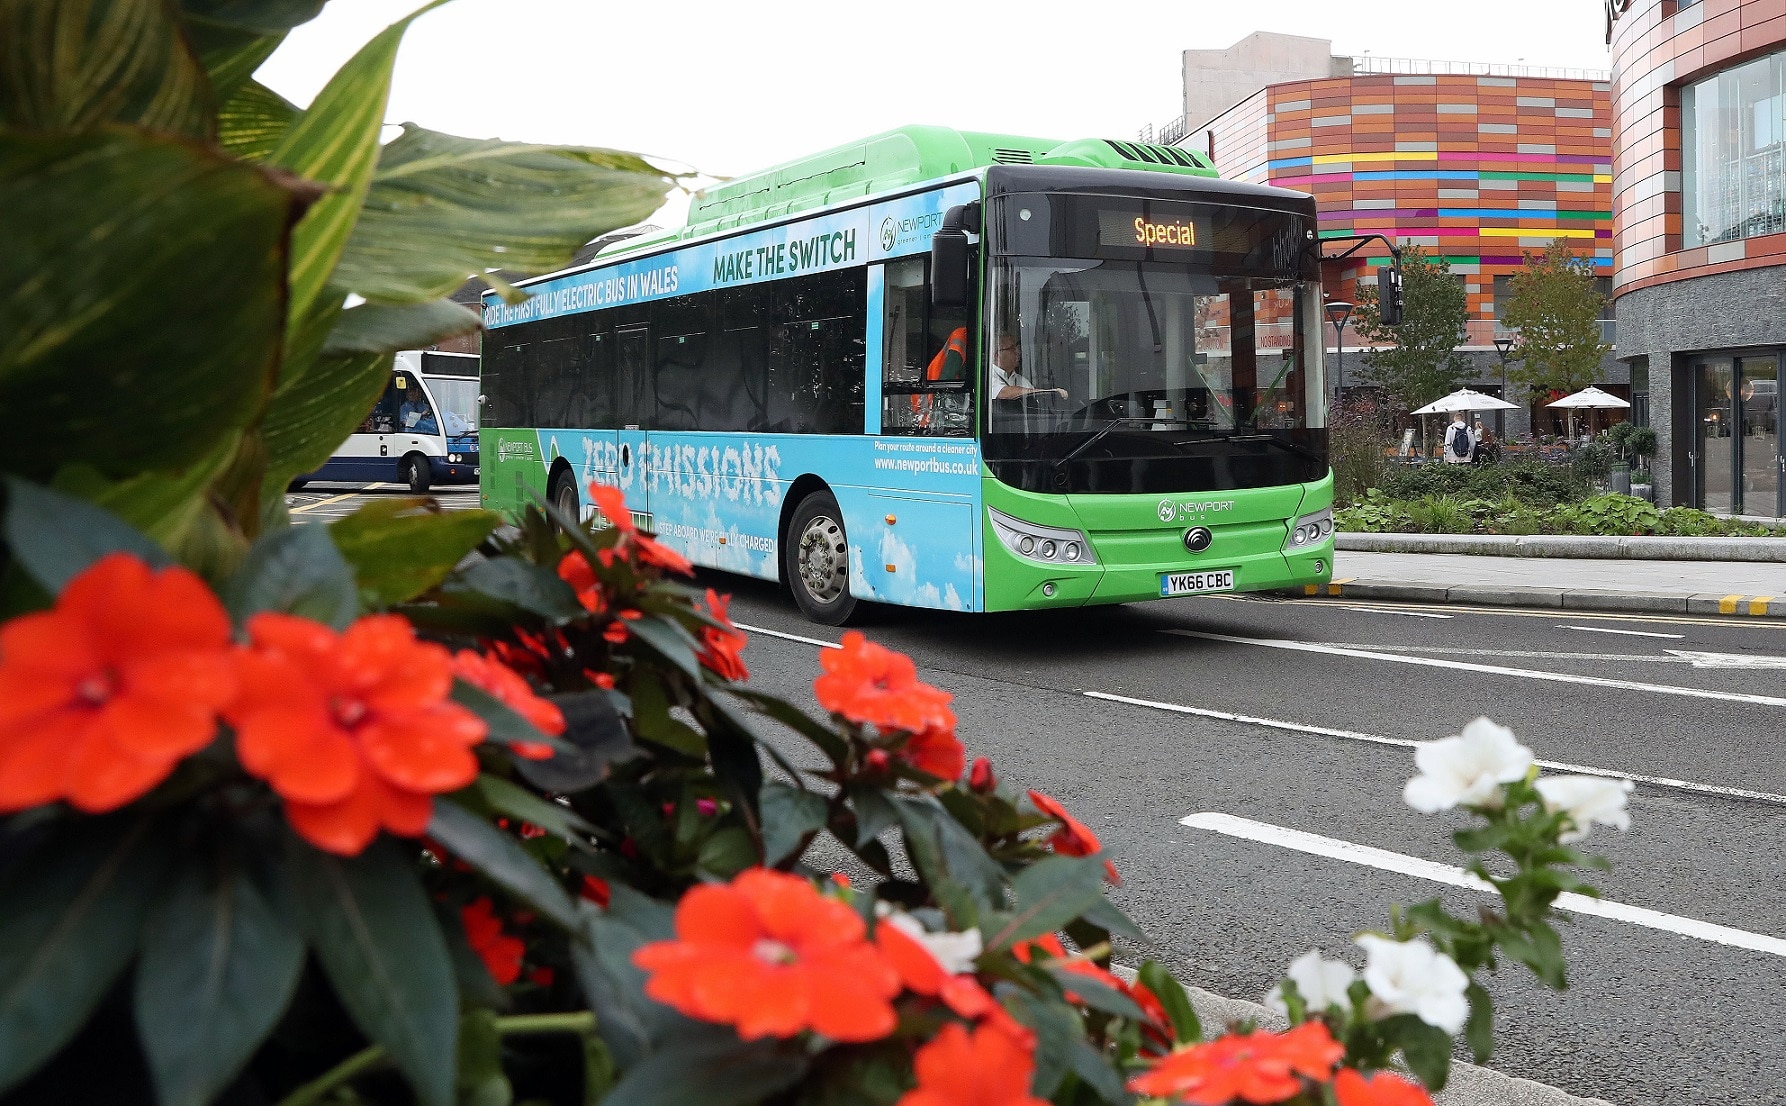 Newport Bus chooses Passenger for new website